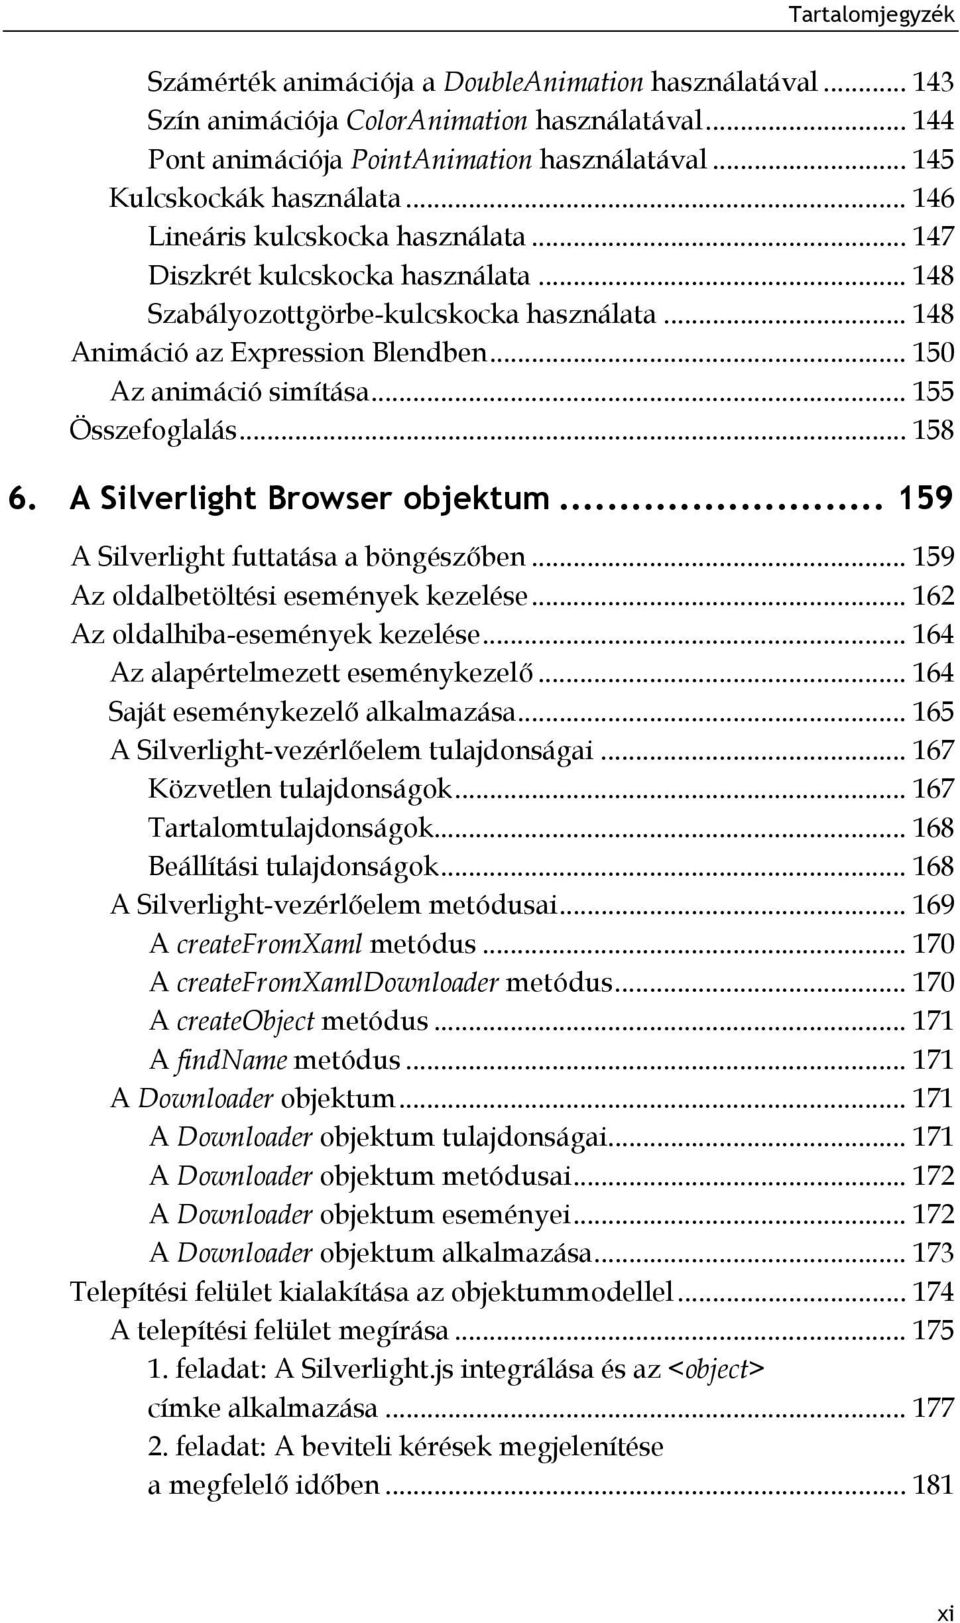 .. 155 Összefoglalás... 158 6. A Silverlight Browser objektum... 159 A Silverlight futtatása a böngészőben... 159 Az oldalbetöltési események kezelése... 162 Az oldalhiba-események kezelése.